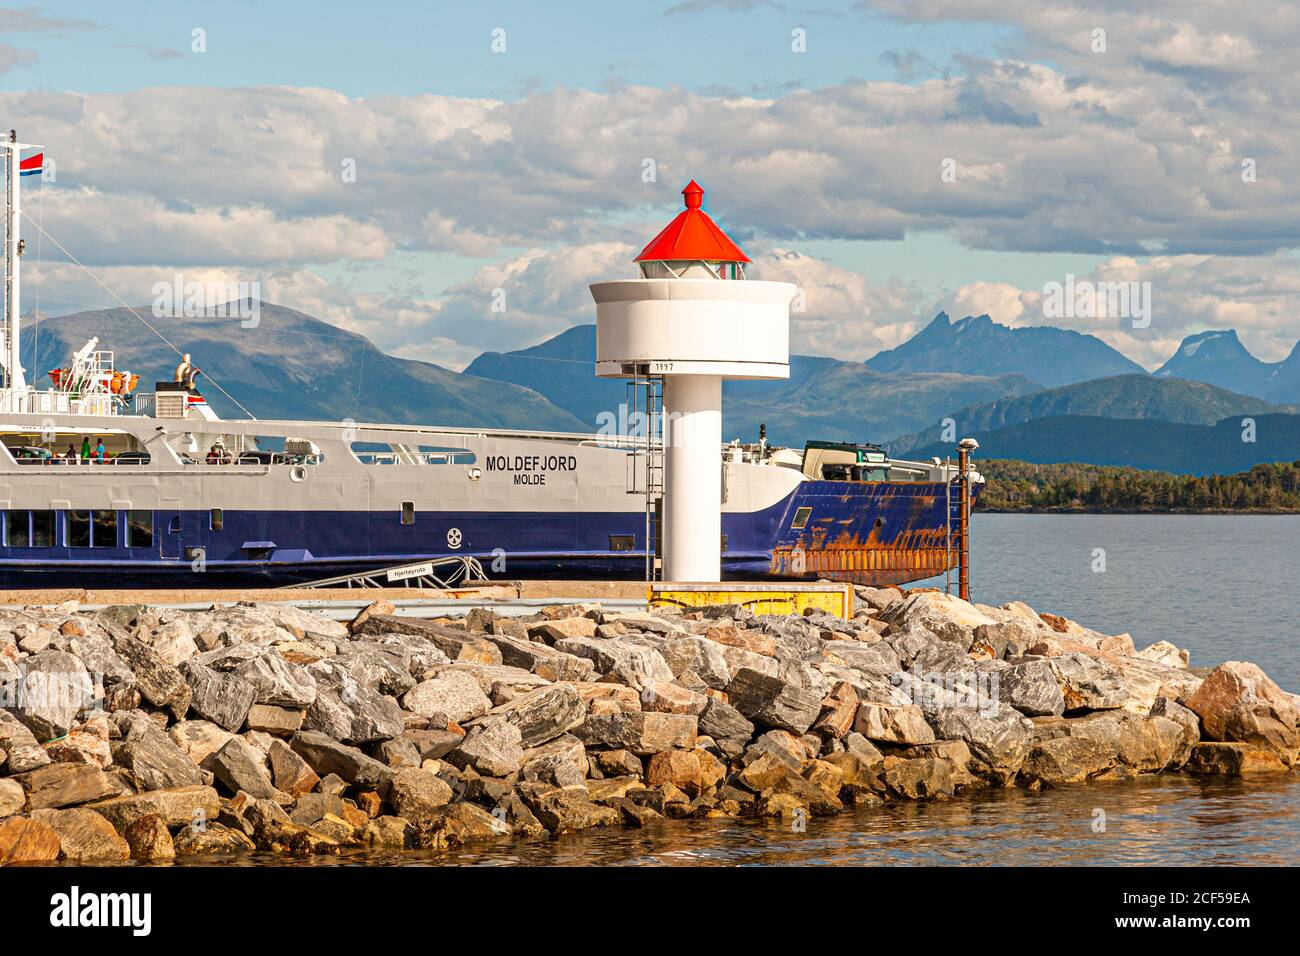 Phare et ferry Moldefjord à Molde, Norvège Banque D'Images